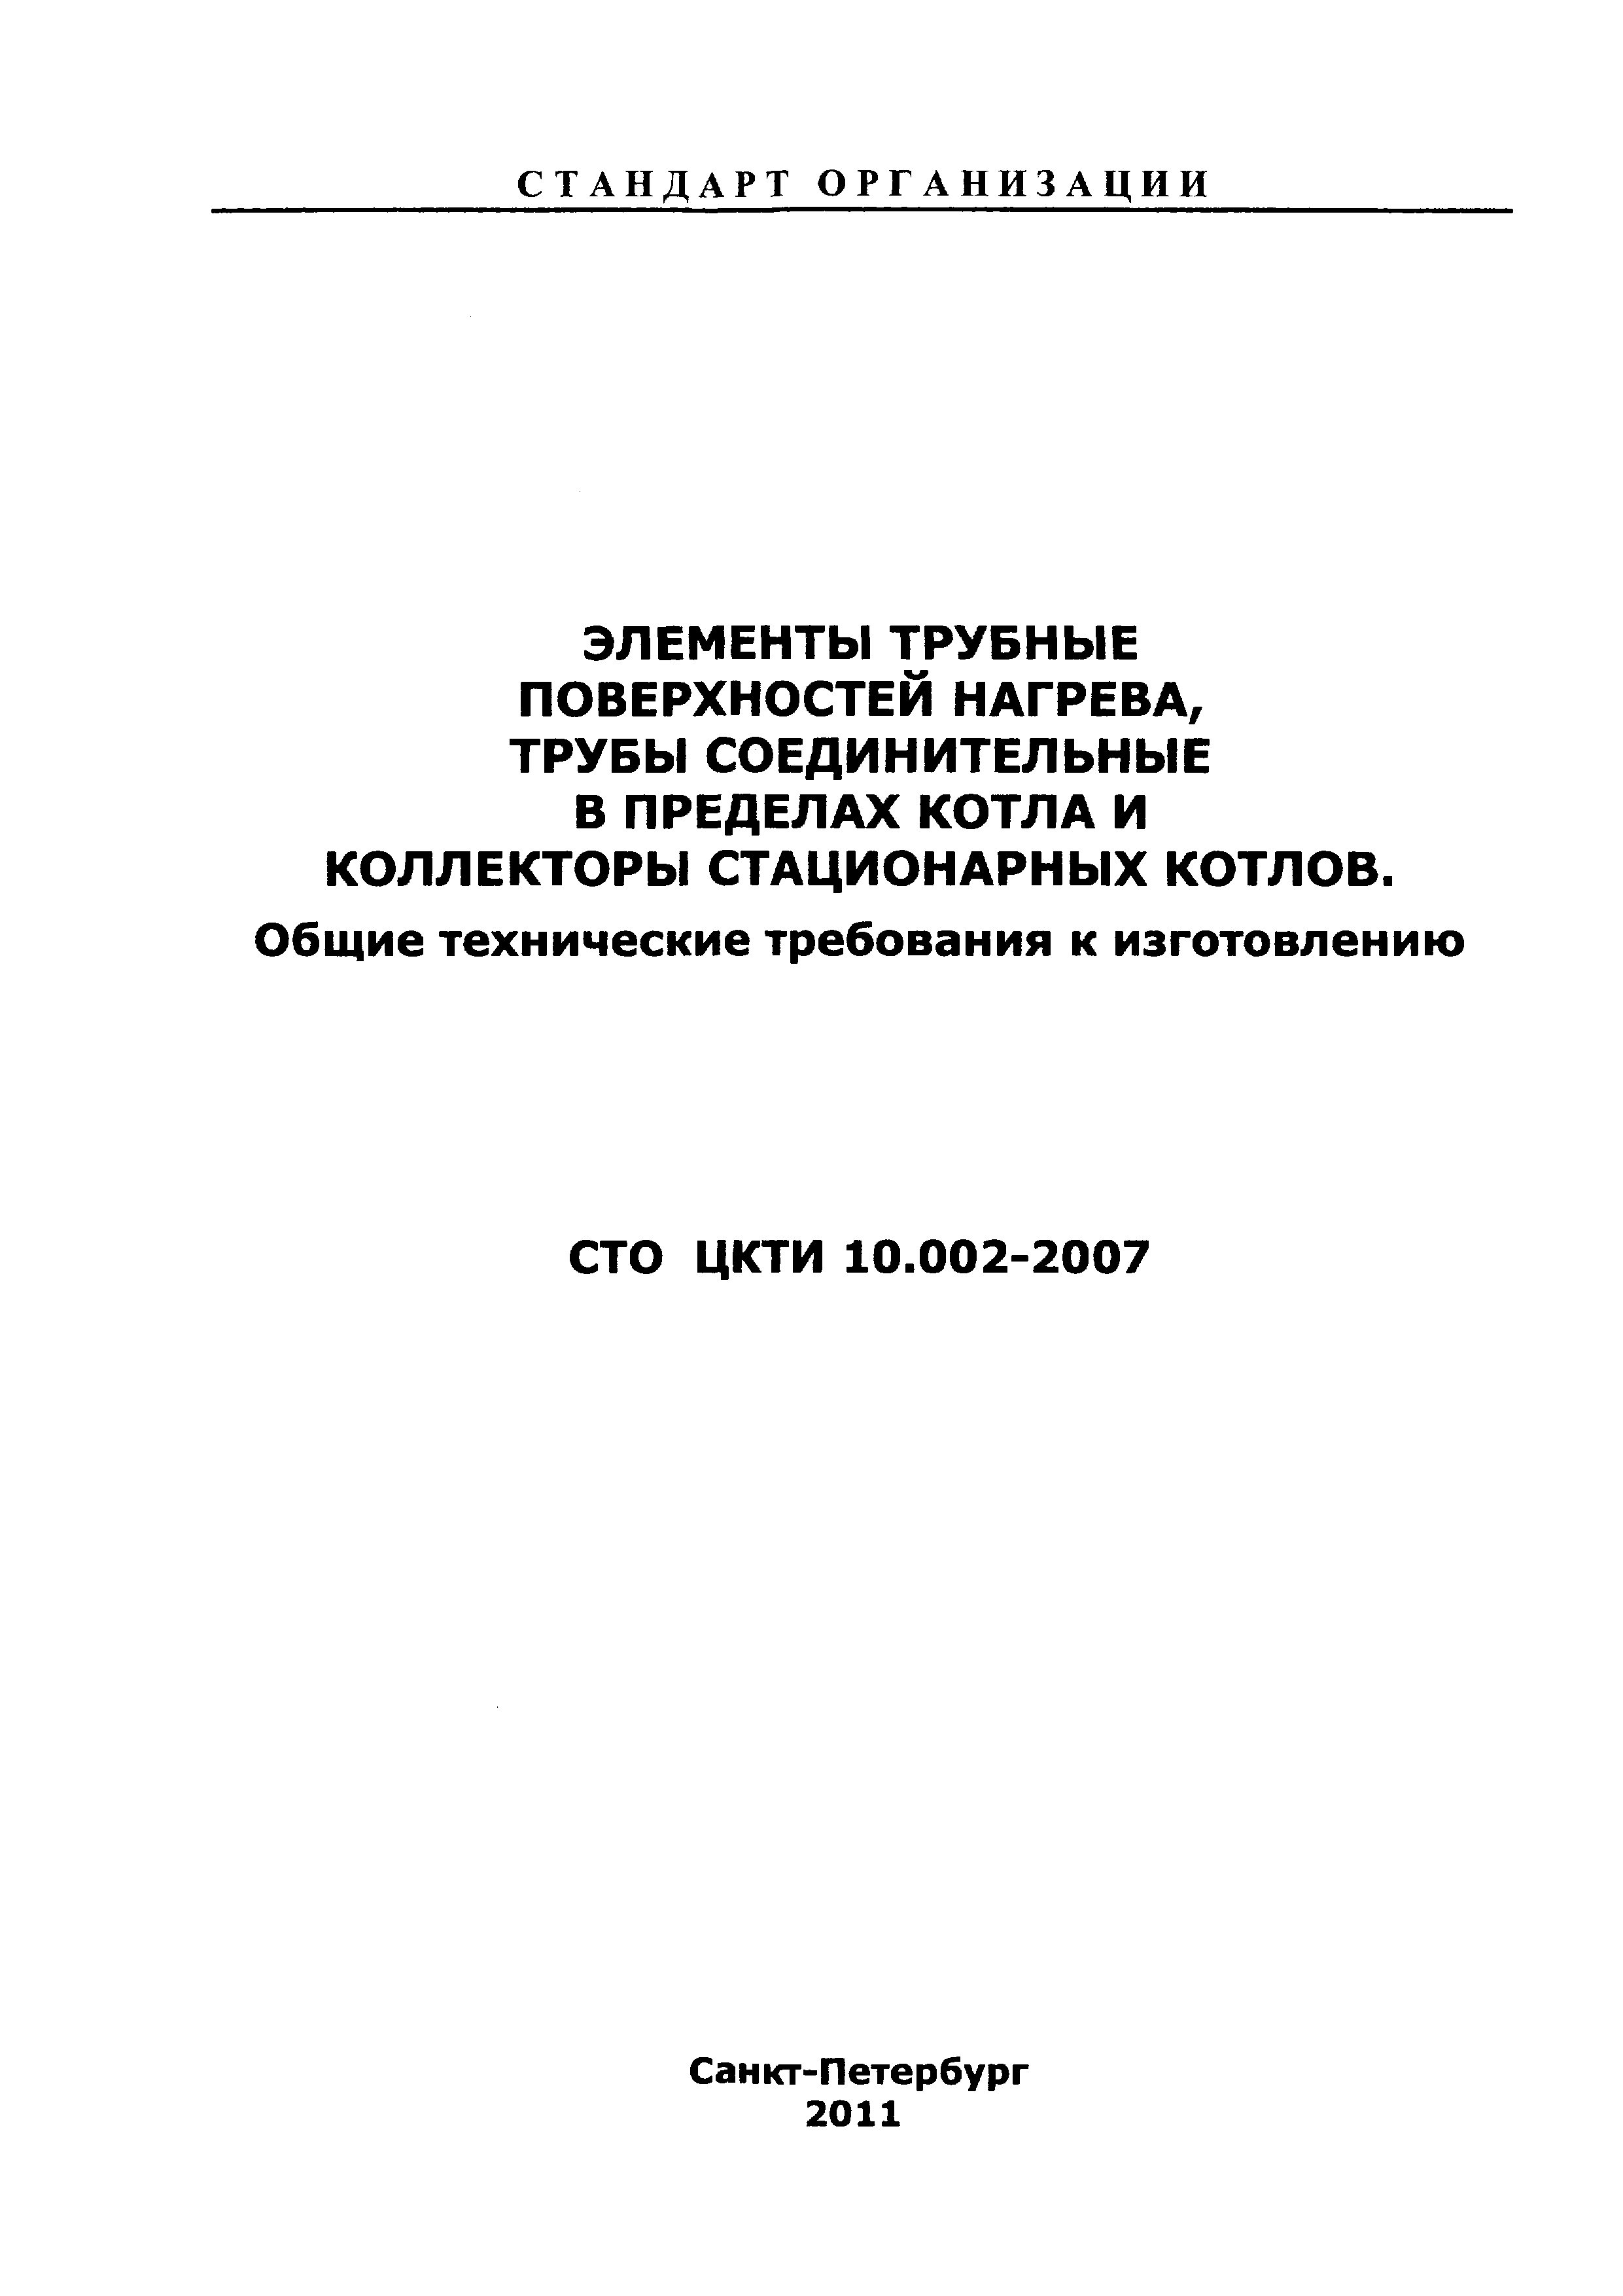 СТО ЦКТИ 10.002-2007